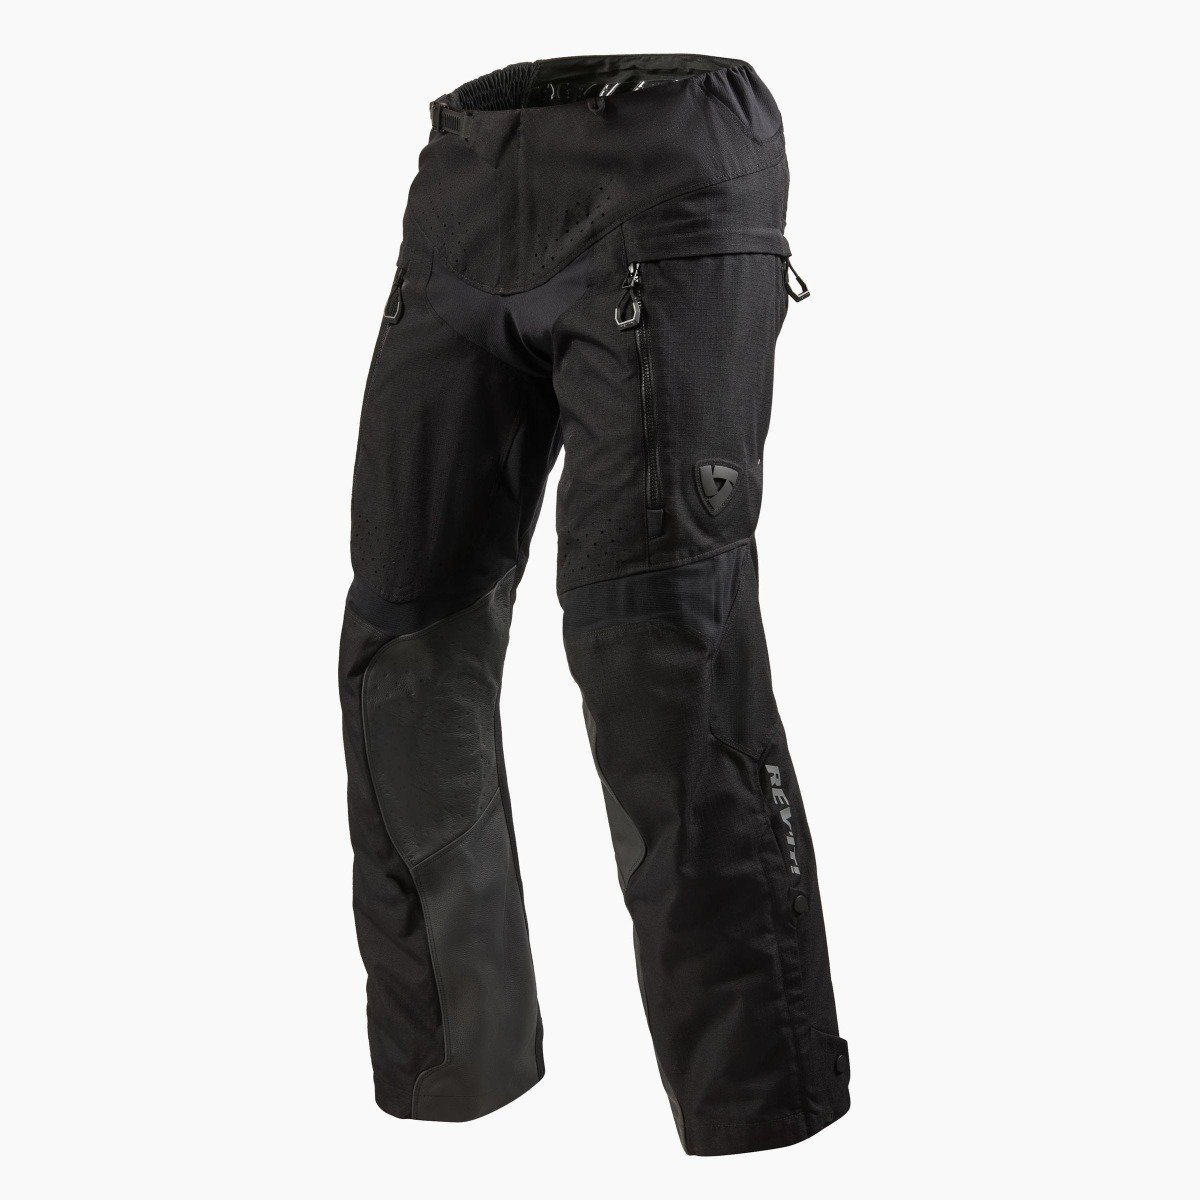 Image of REV'IT! Continent Short Black Motorcycle Pants Size 2XL EN